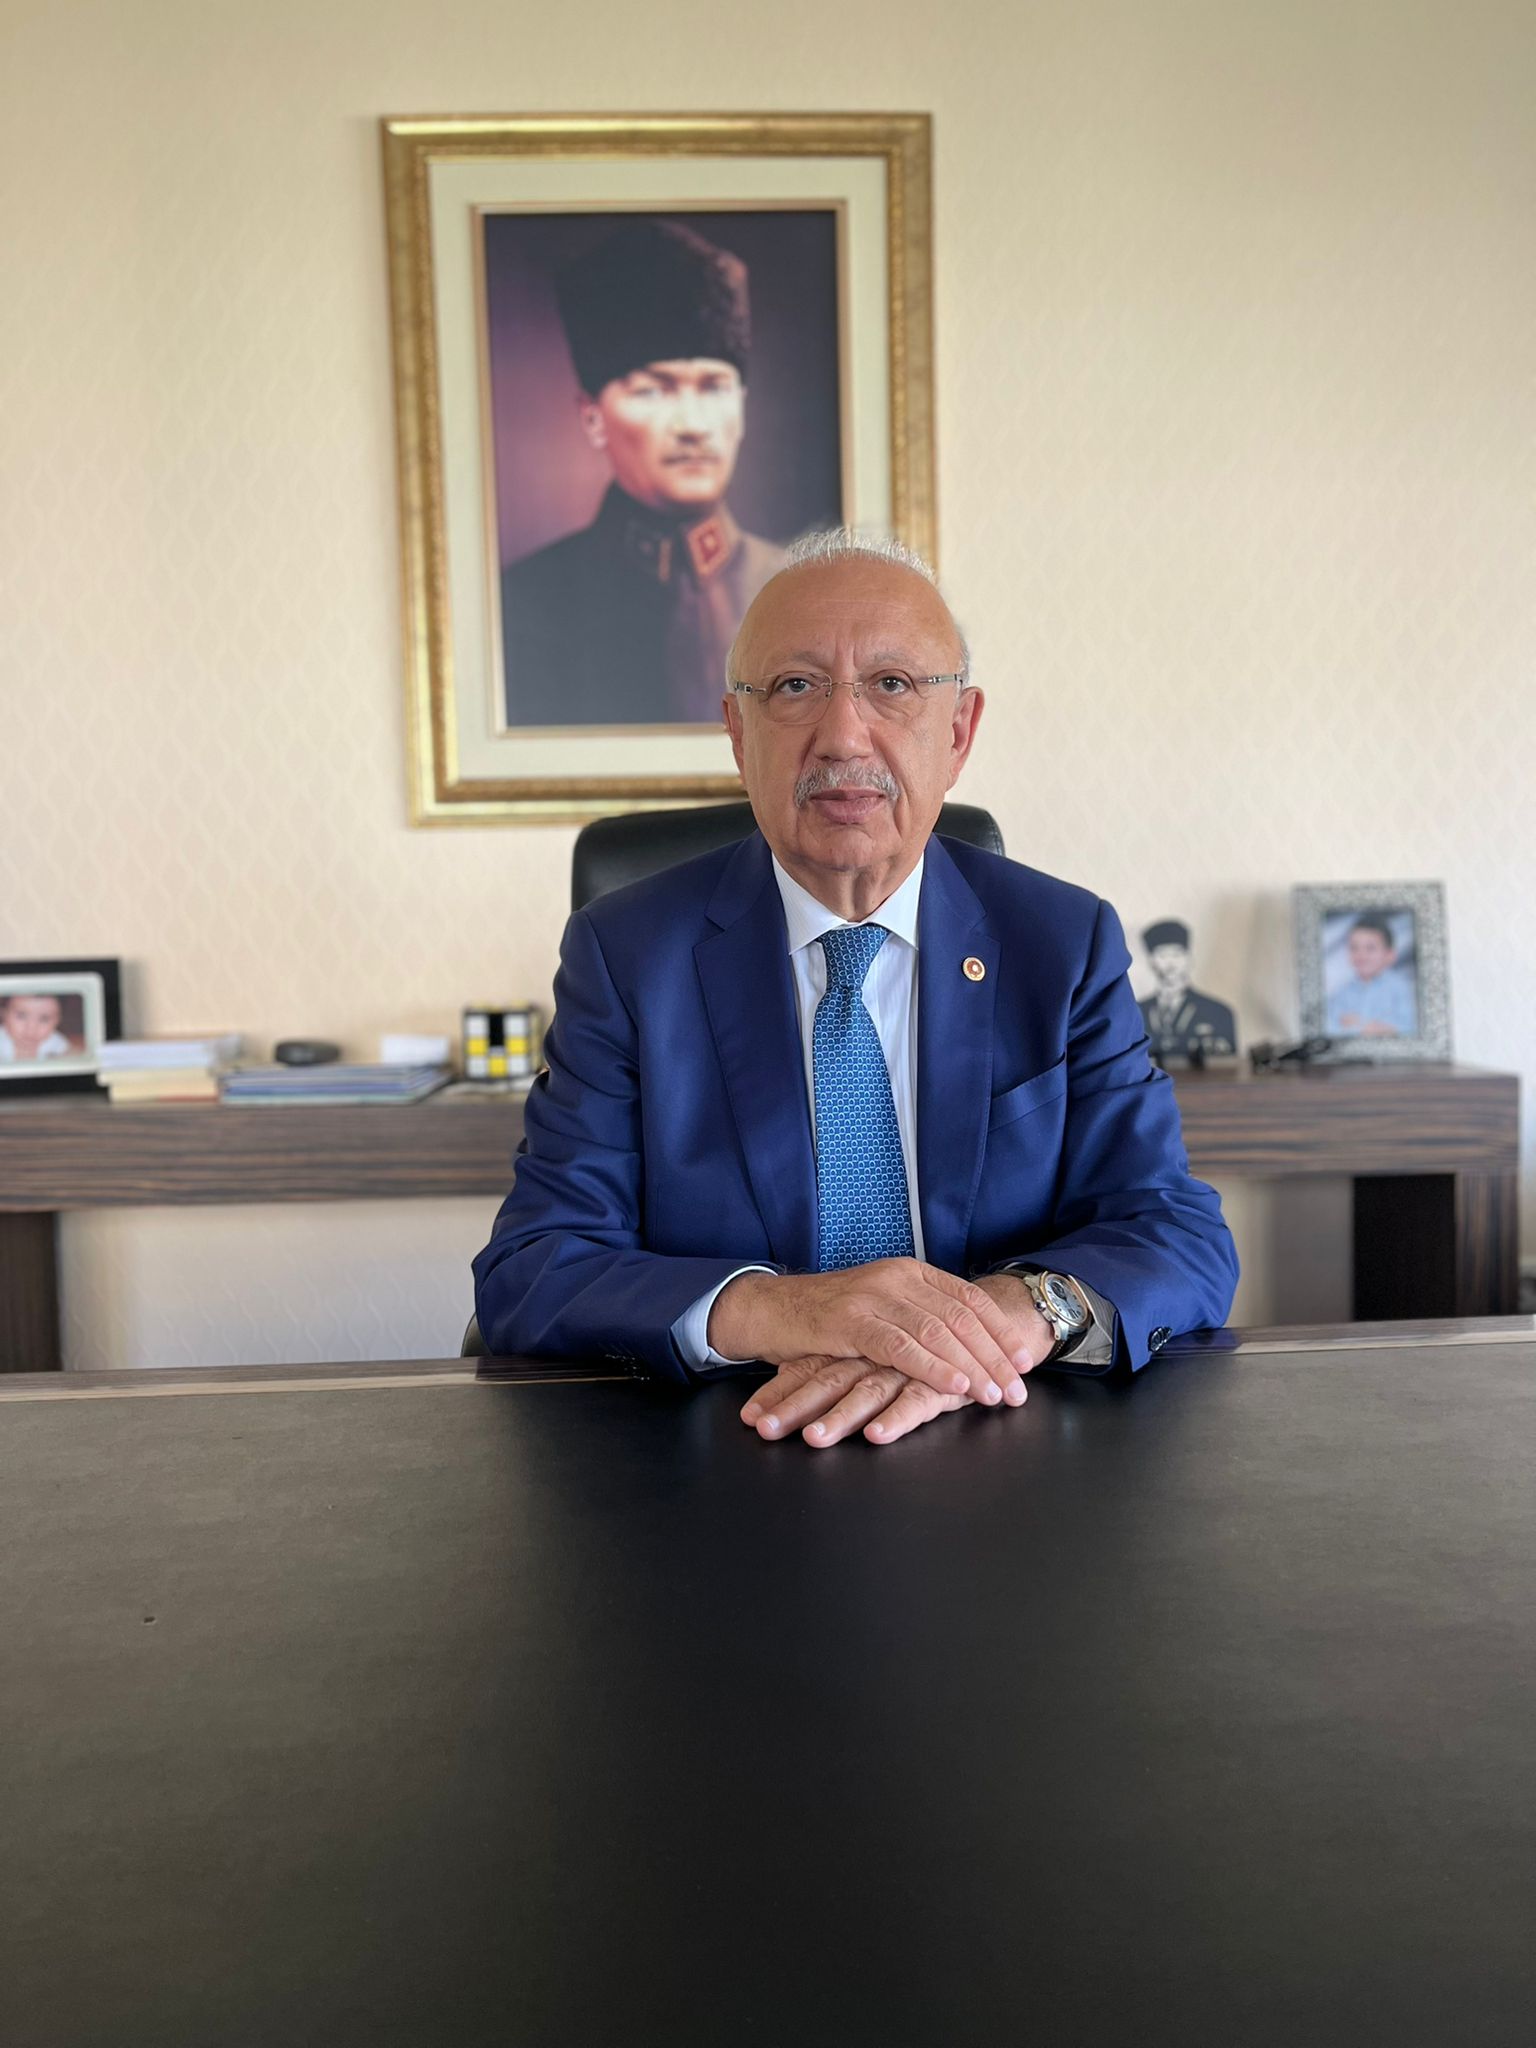 İYİ Parti Genel Başkan Danışmanı ve 25. Dönem Sivas Milletvekili Celal Dağgez Regaip Kandili Dolayısıyla Mesaj Yayınladı